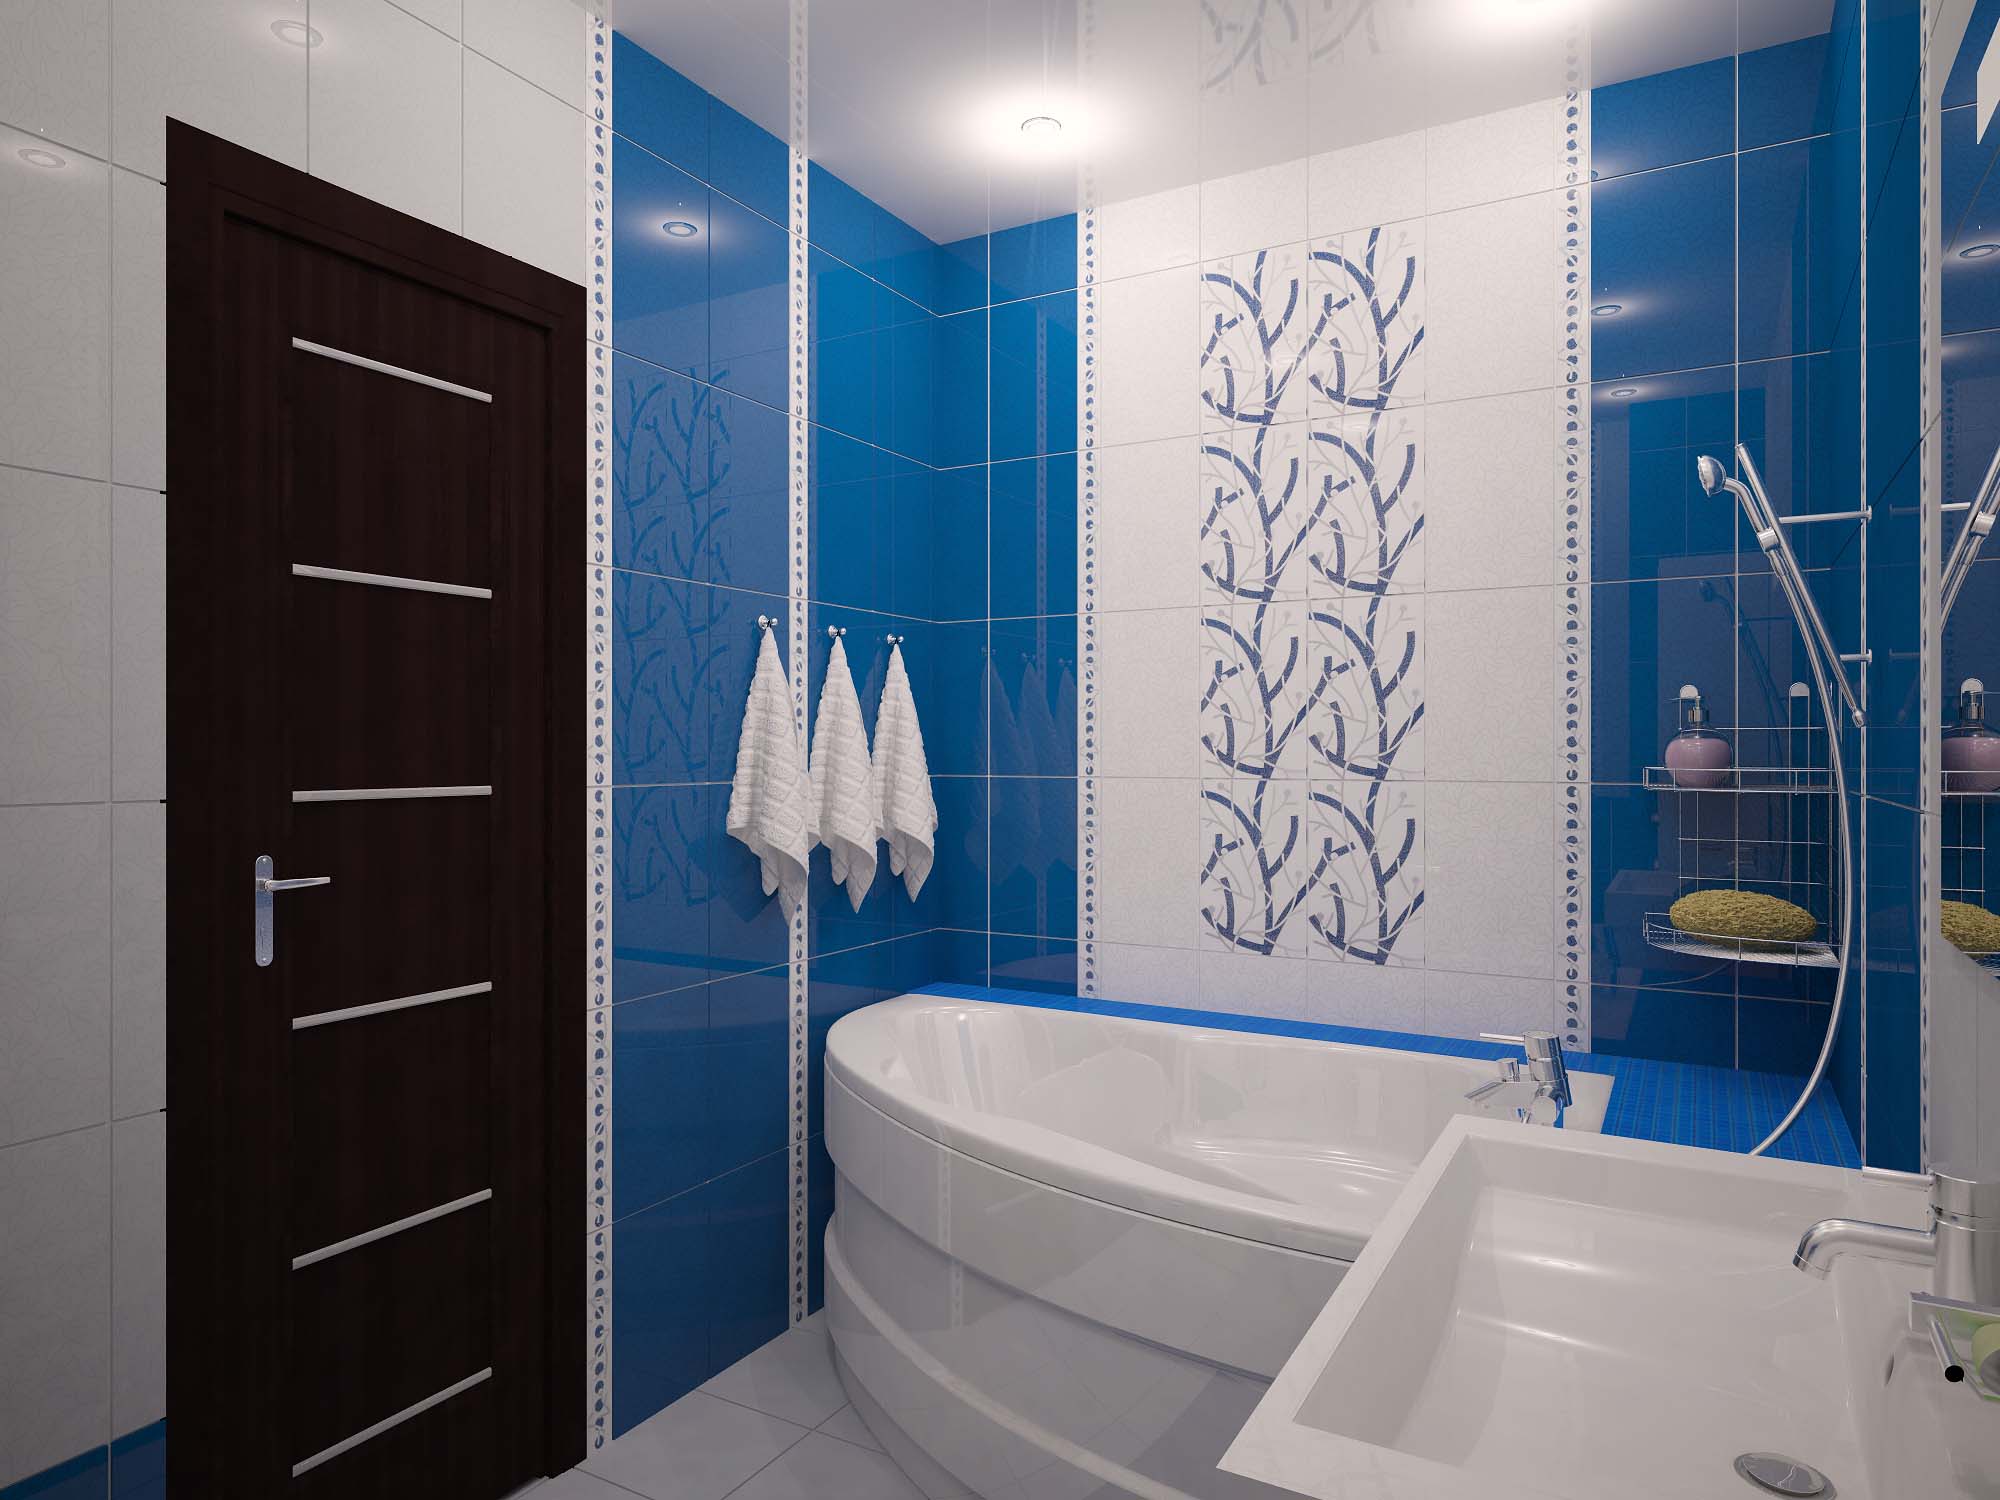 تصميم الحمام 6 متر مربع اللون الأزرق والأبيض